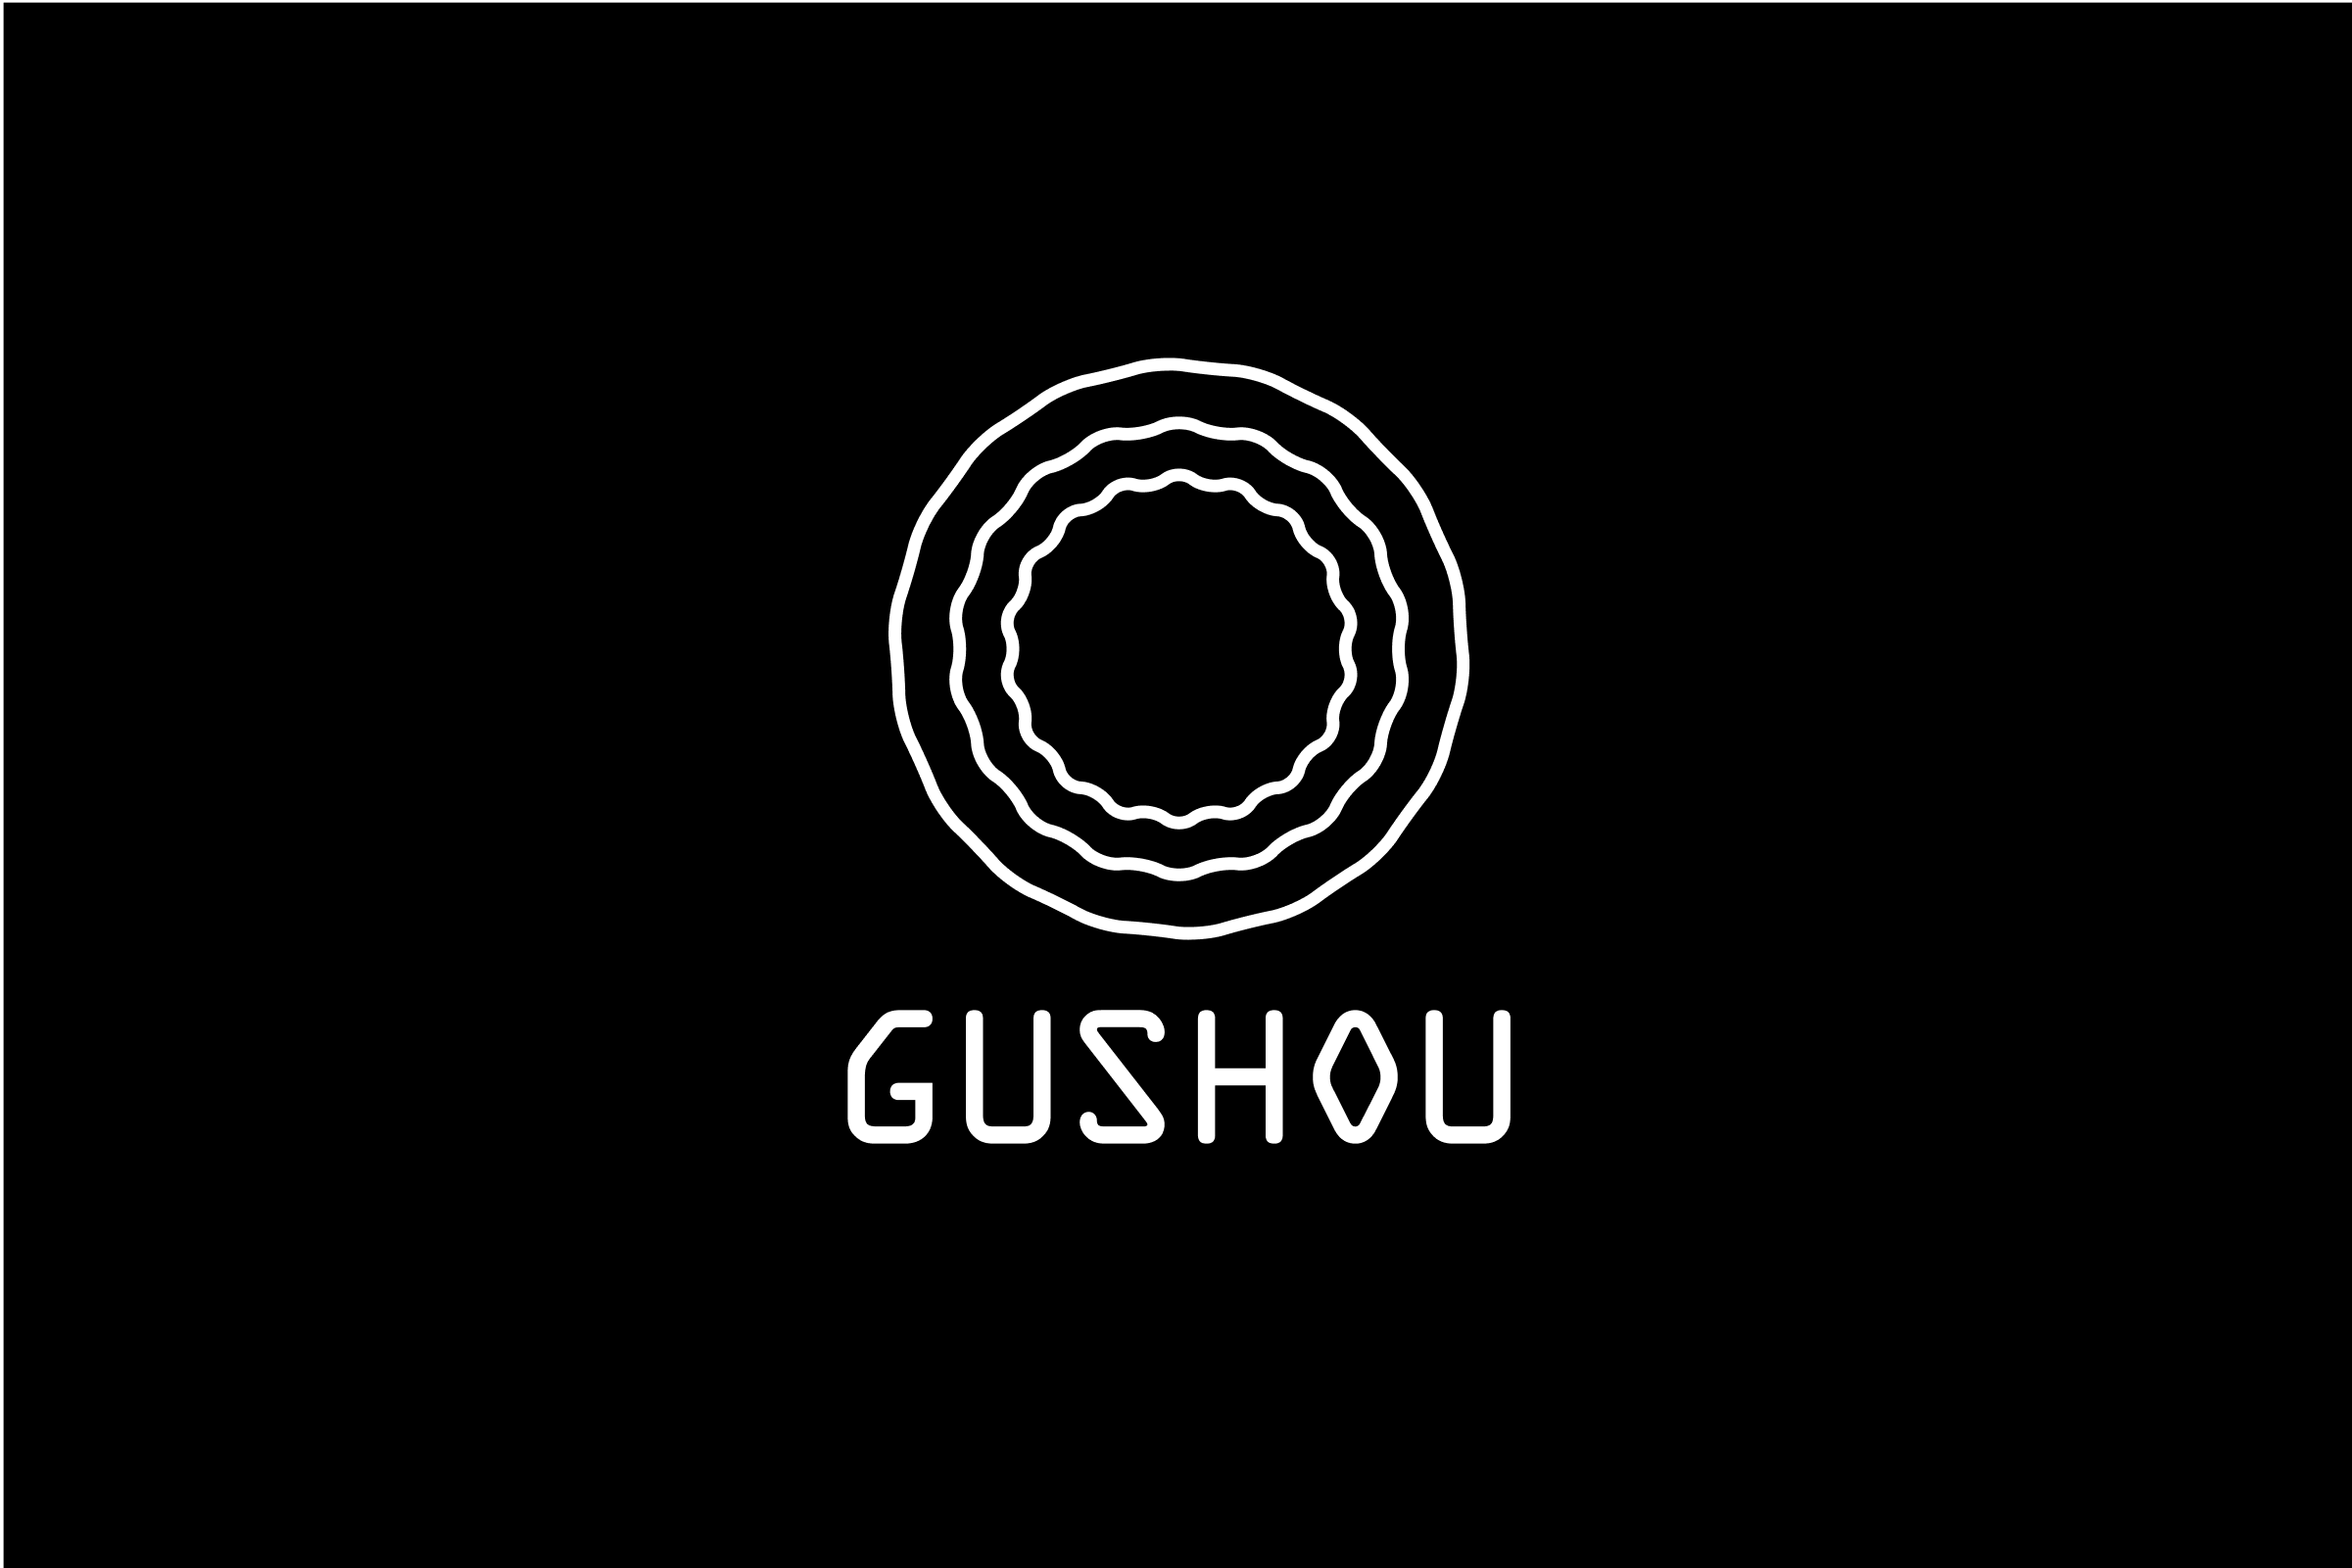 simon-p-coyle-branding-logo-design-2015-gushou